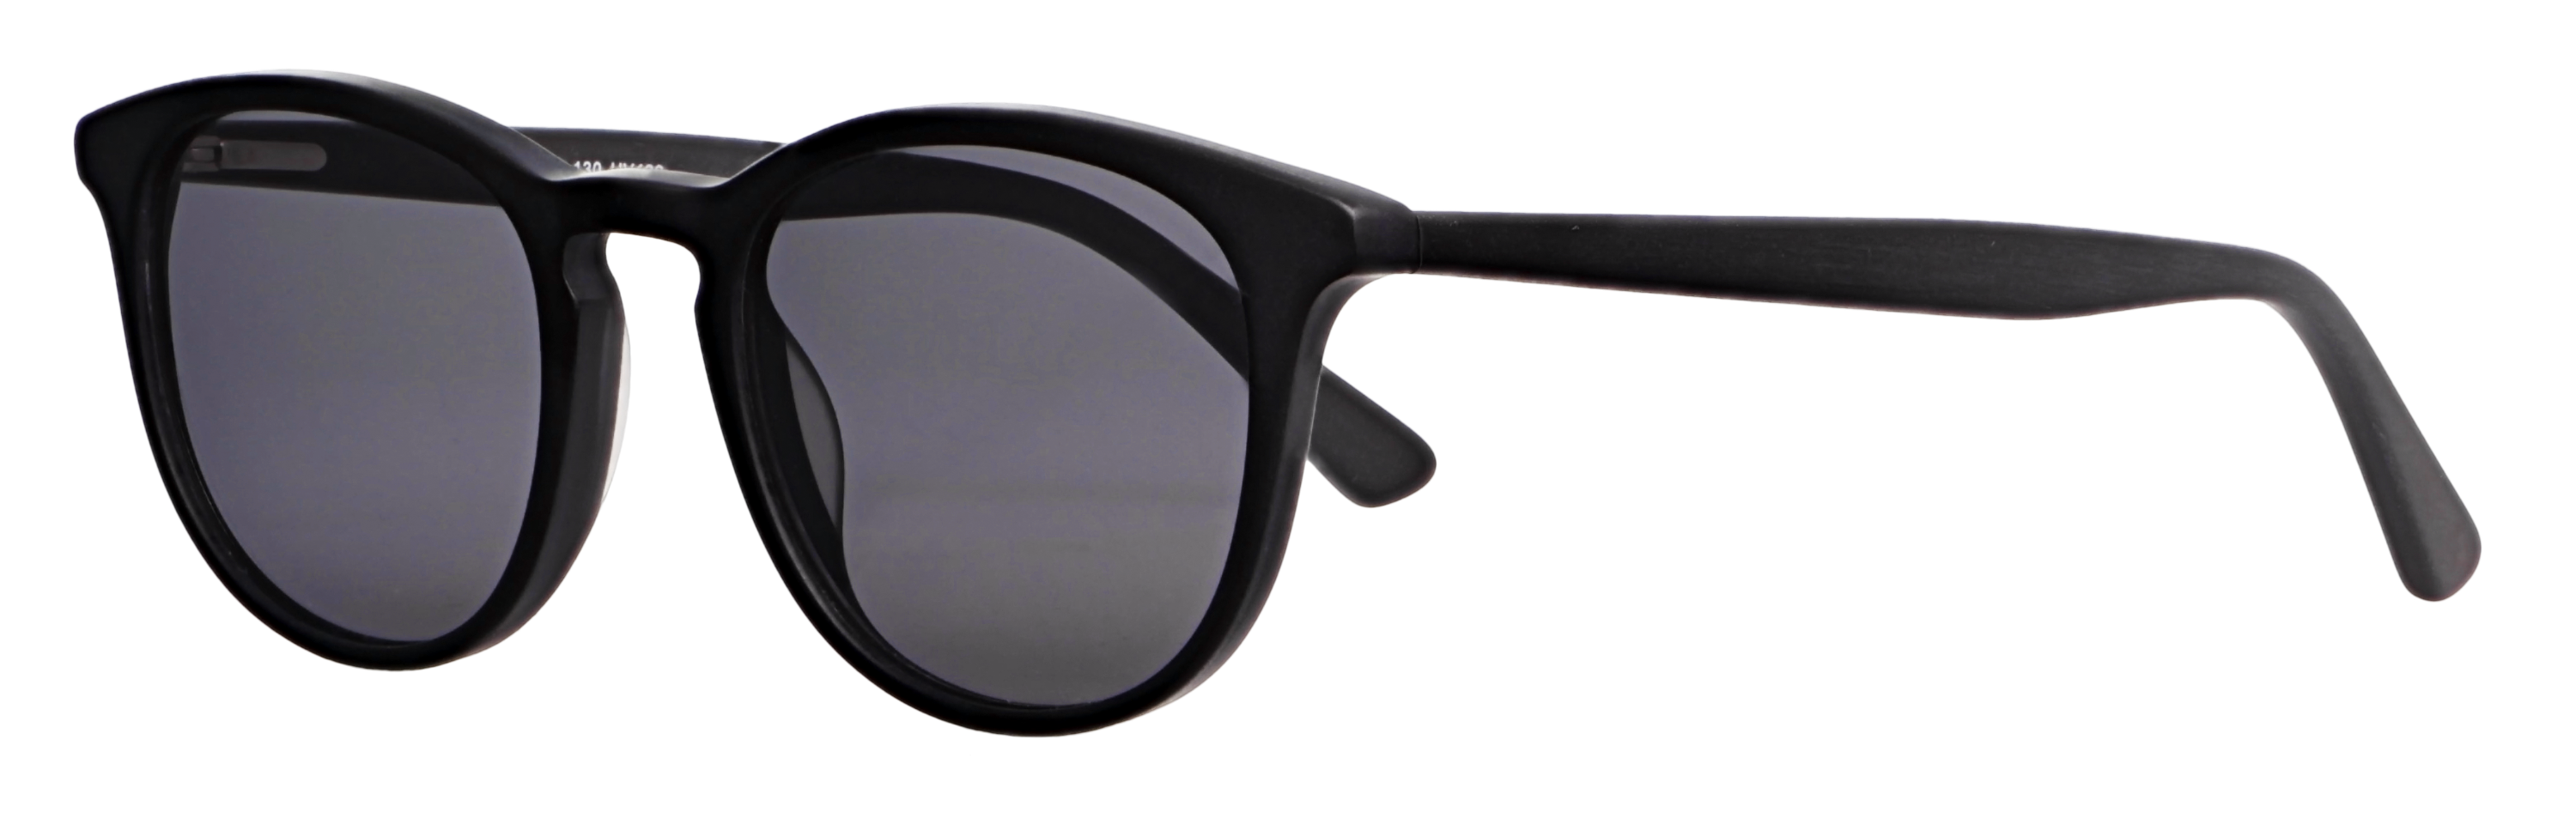 Das Bild zeigt die Sonnenbrille 717882 von der Marke Abele Optik in schwarz matt.